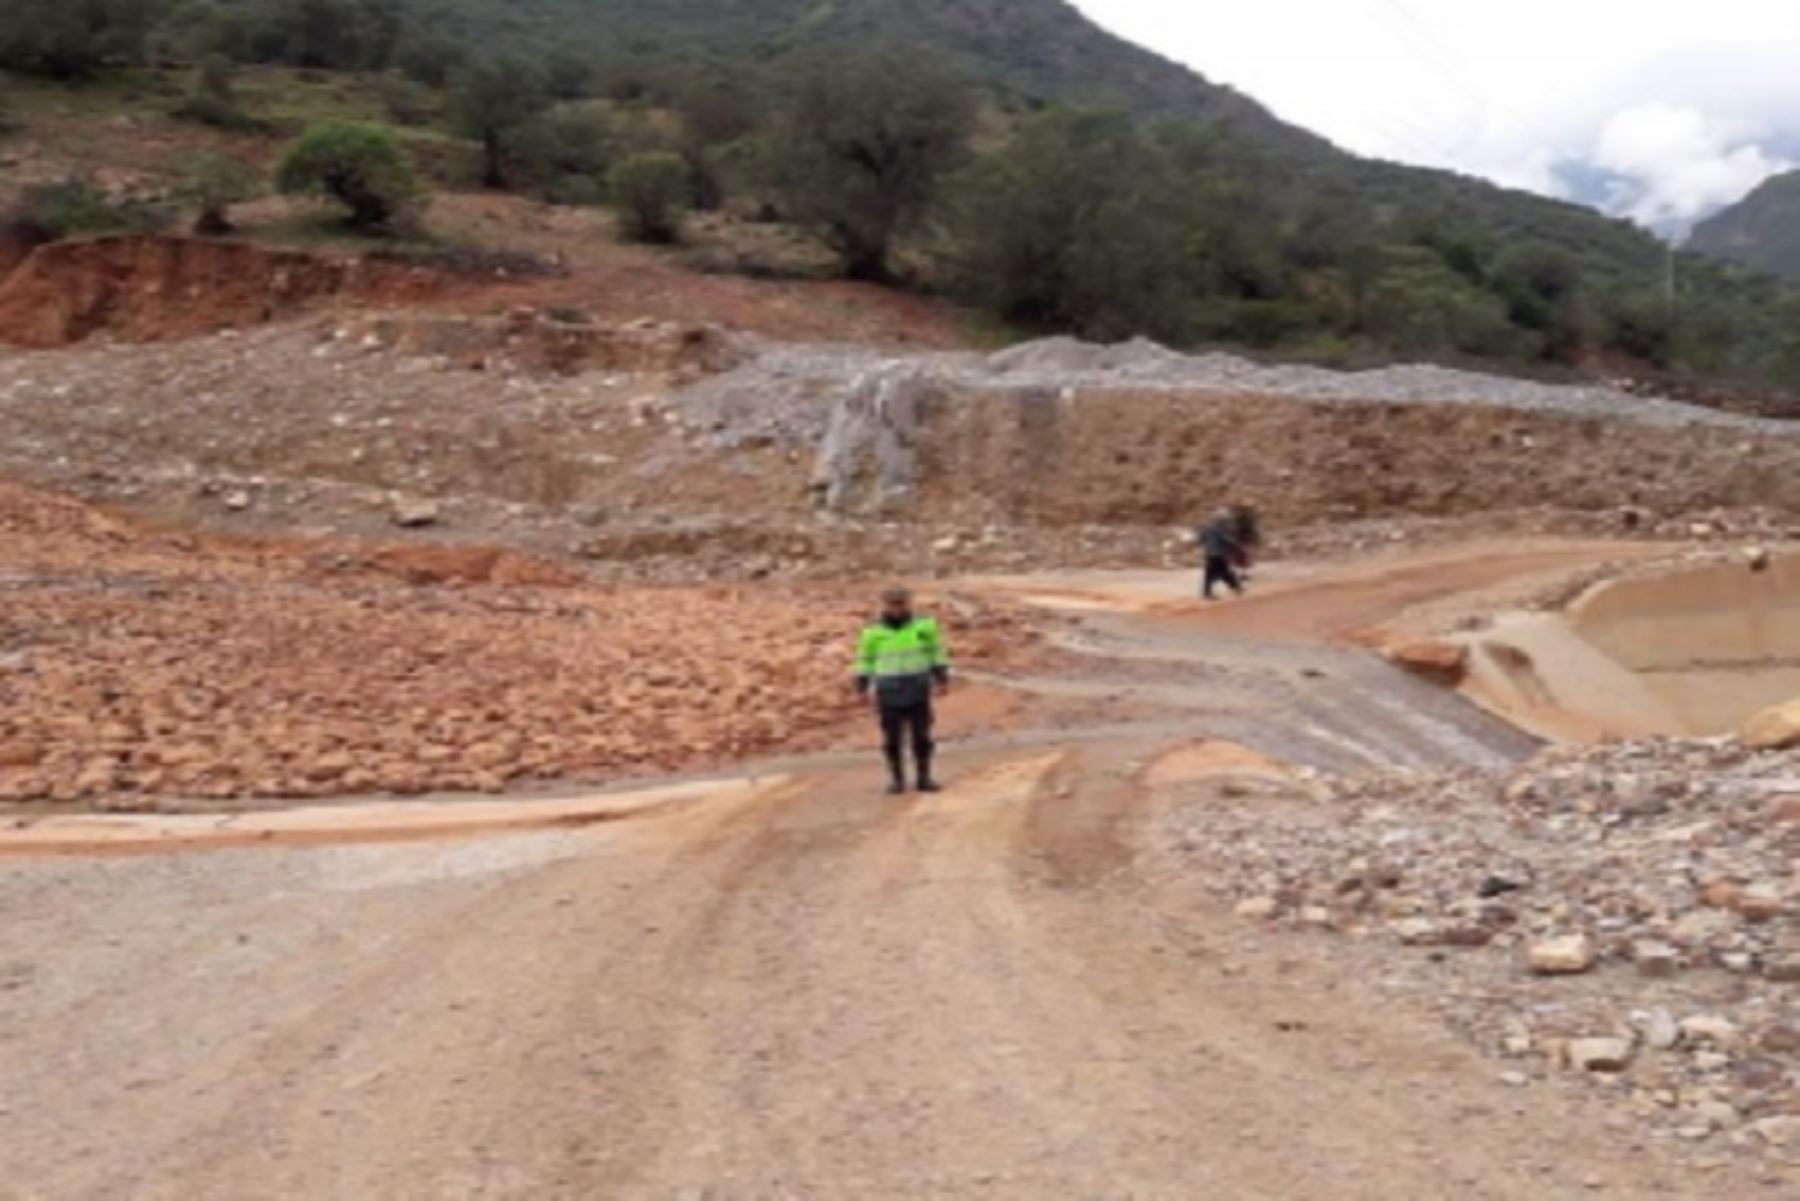 A consecuencia de las fuertes lluvias hoy se produjo un huaico que afectó la vía de comunicación del sector de Masupampa, distrito de Tapairihua, provincia de Aymaraes, en la región Apurímac y el tránsito se encuentra restringido, informó el Instituto Nacional de Defensa Civil (Indeci).